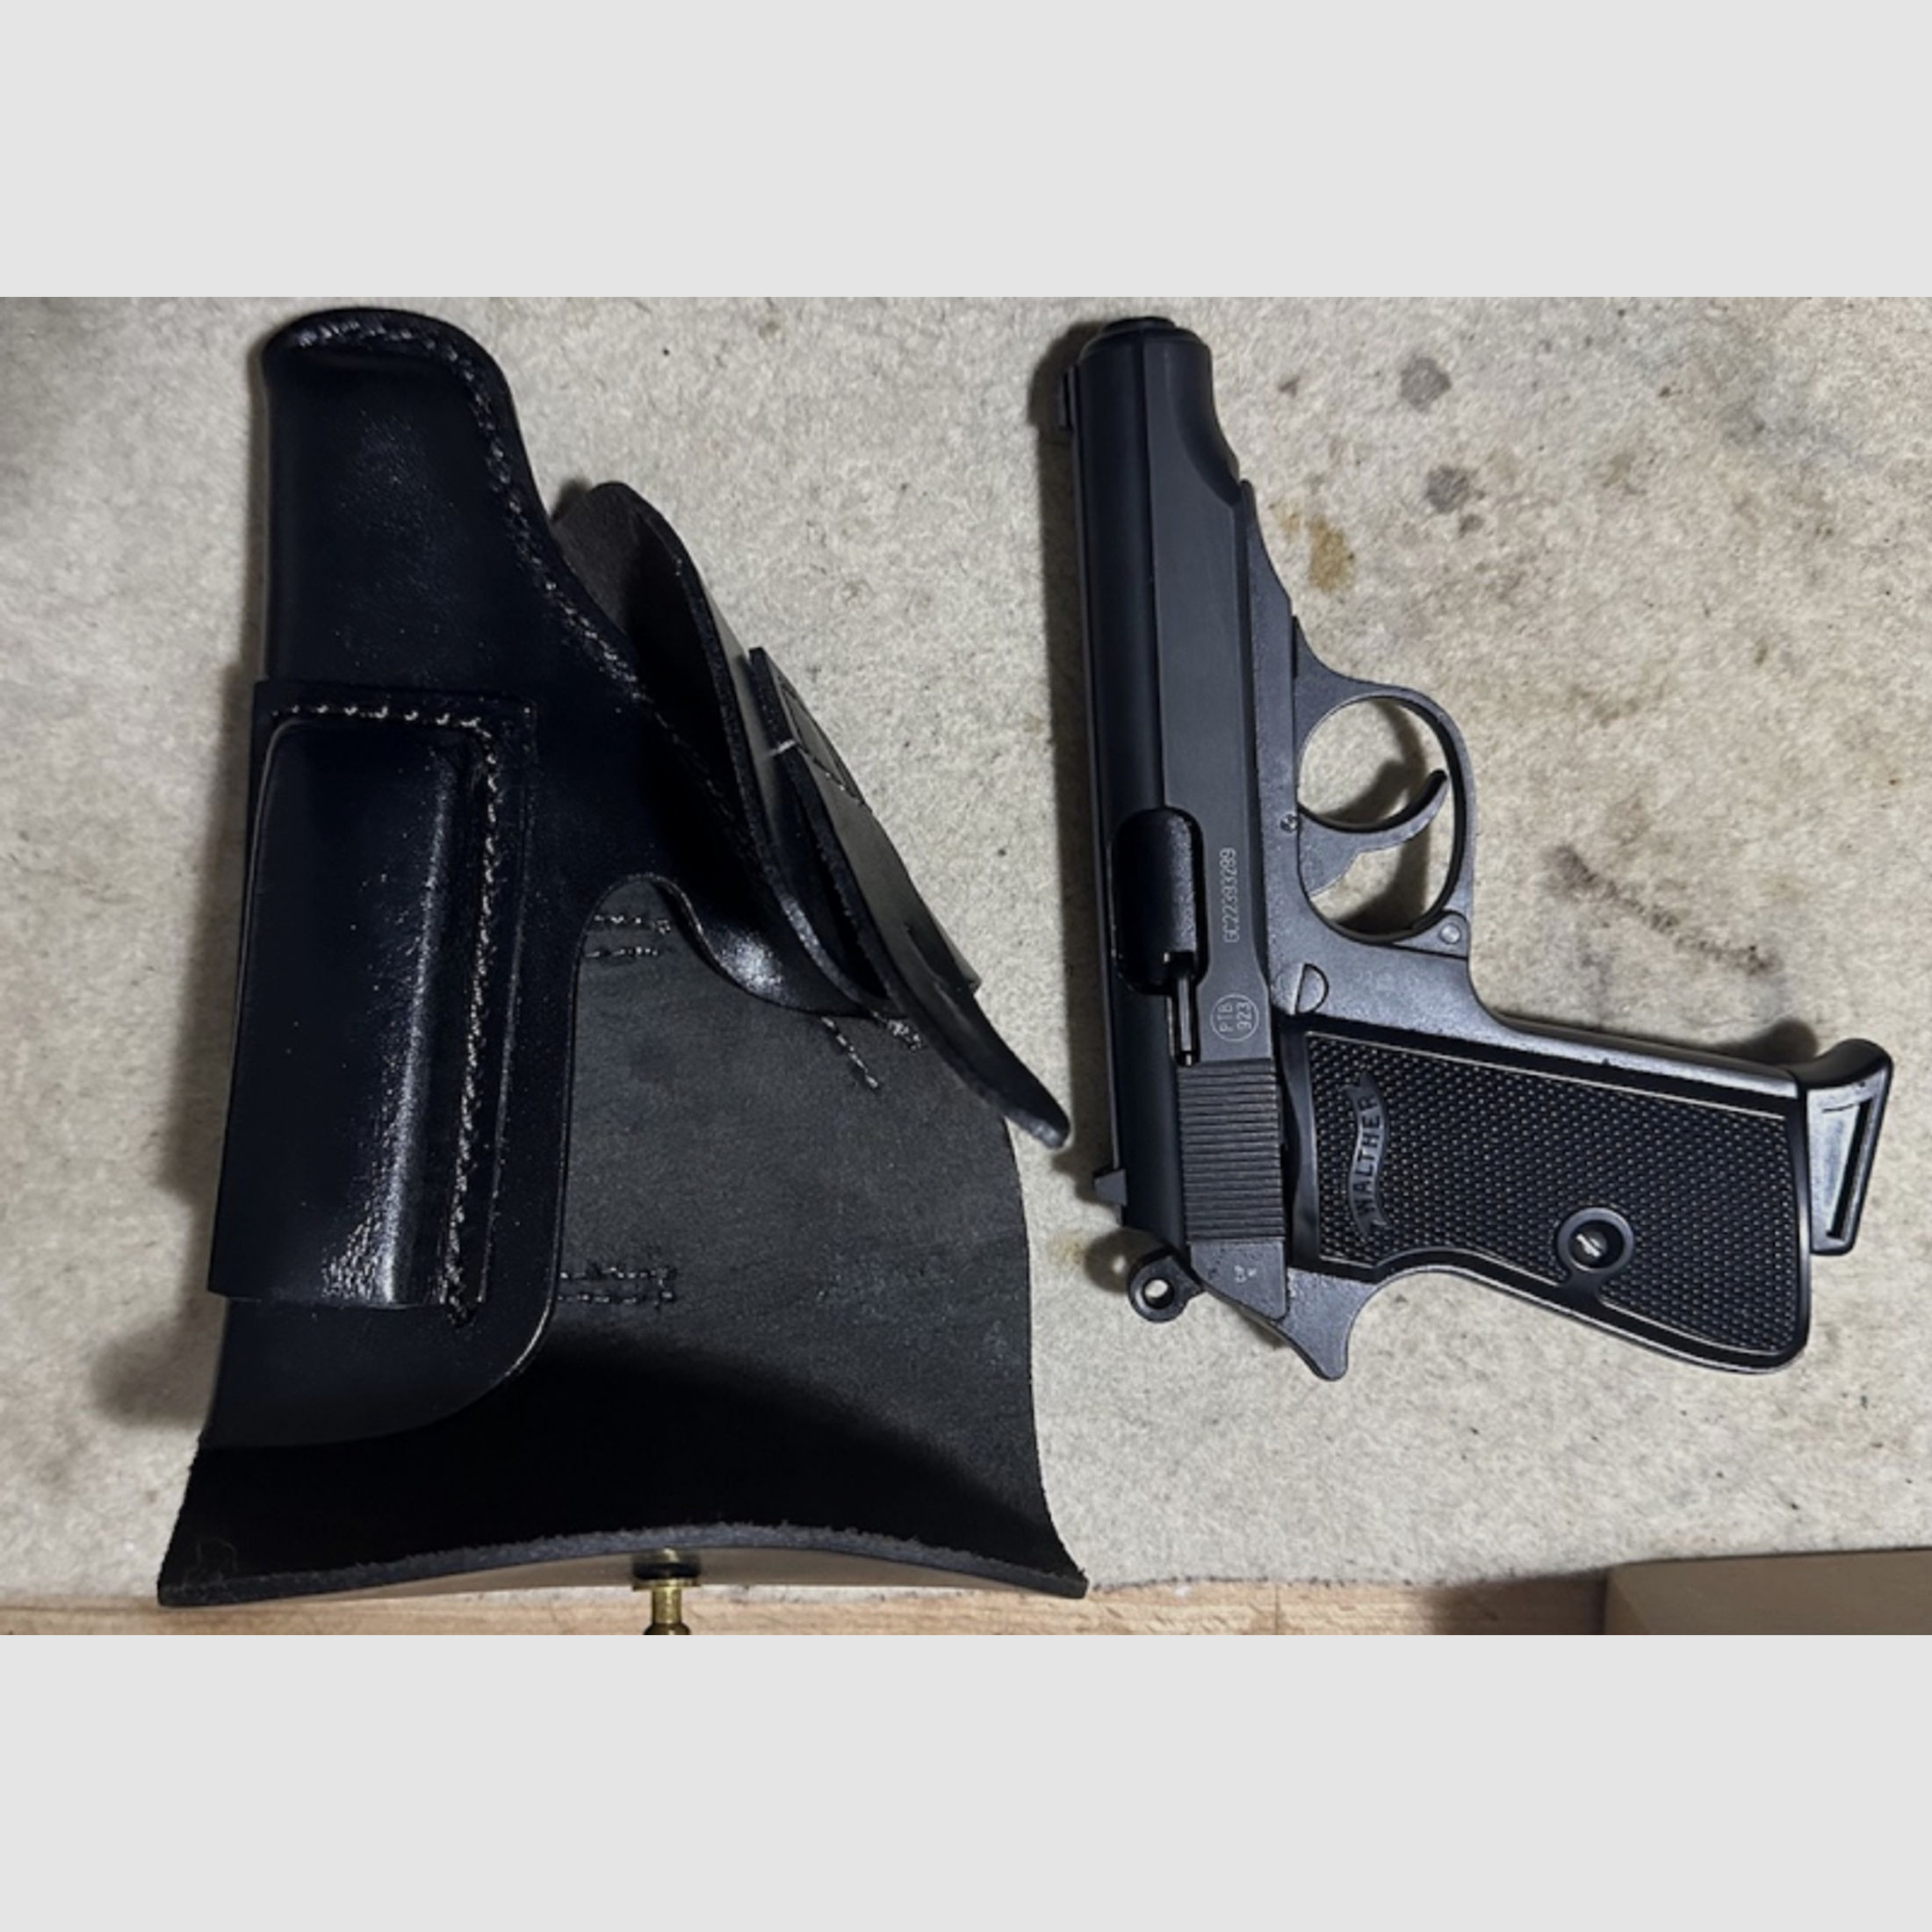 Pistolentasche für Walther PPK oder ähnlich